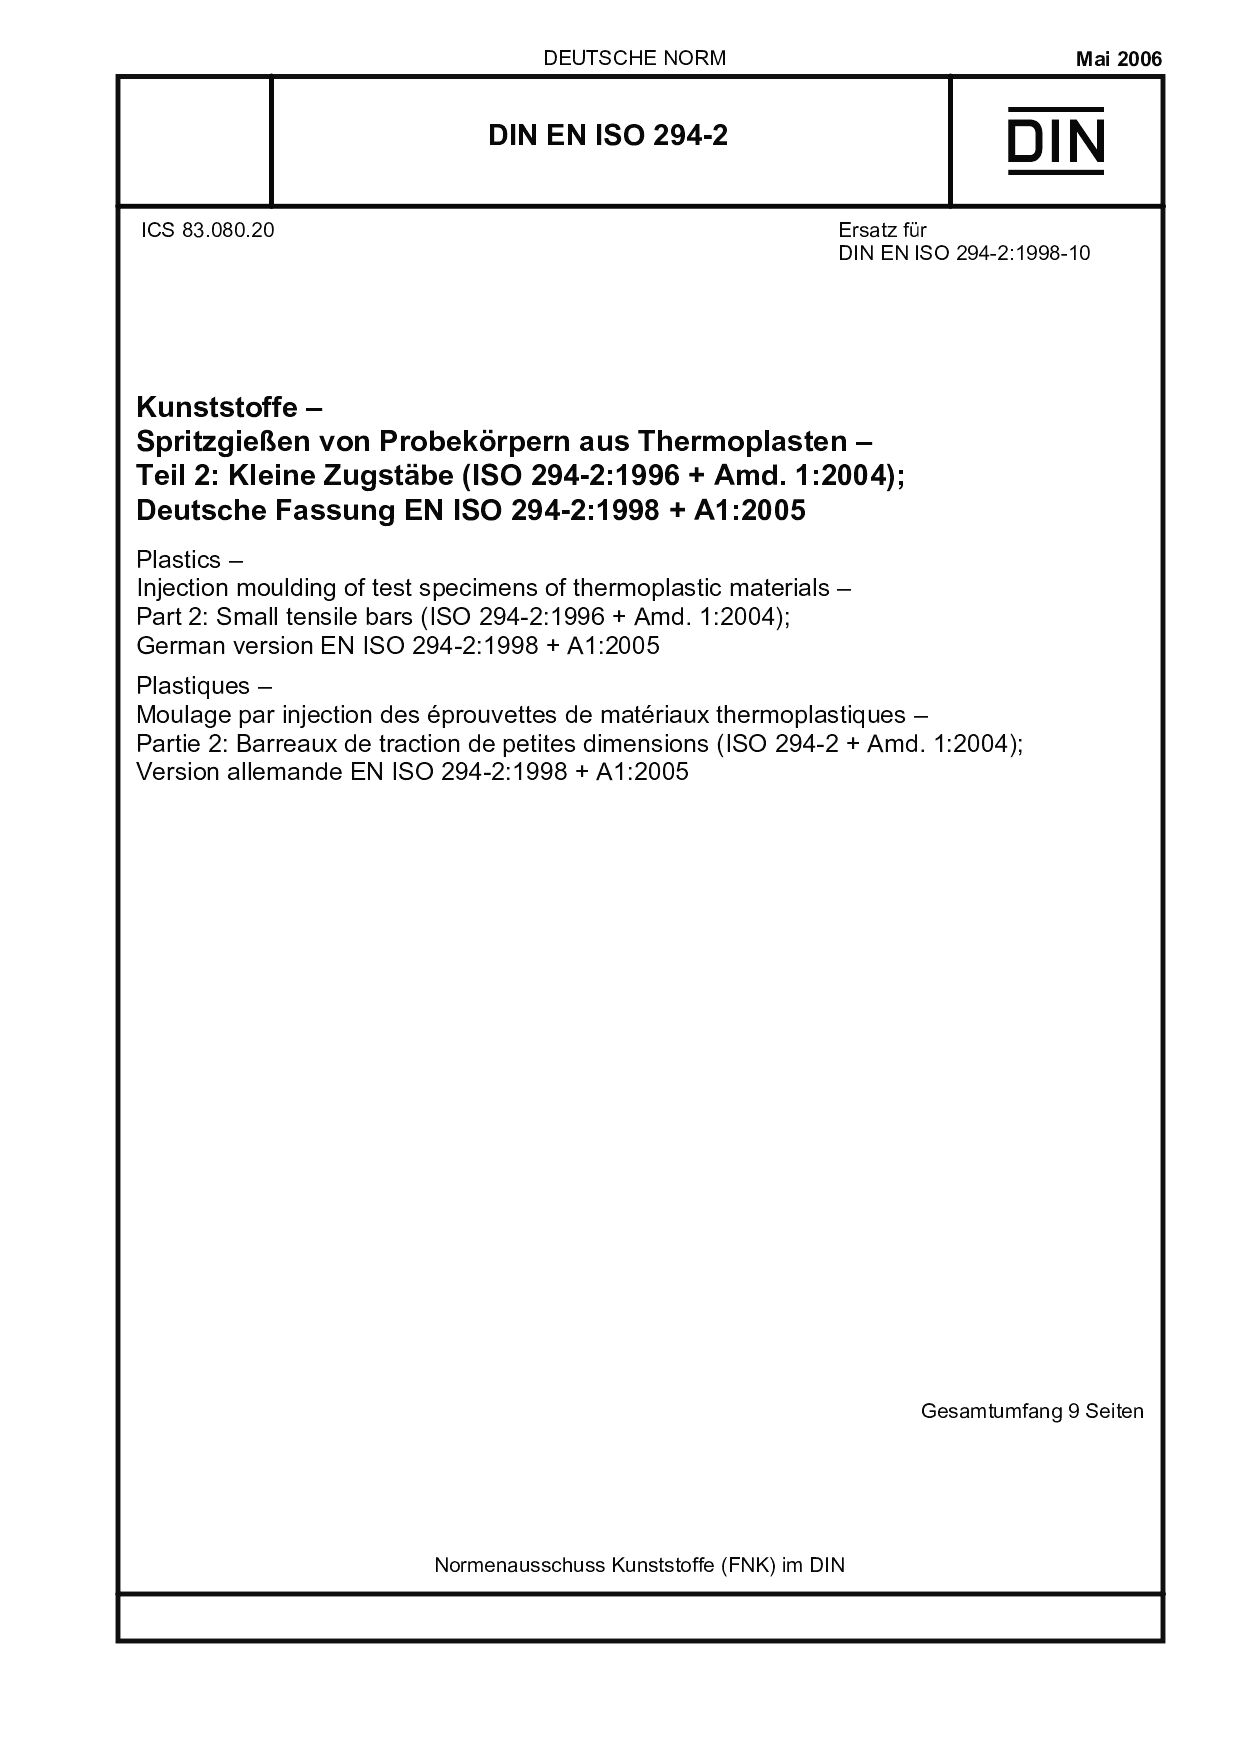 DIN EN ISO 294-2:2006